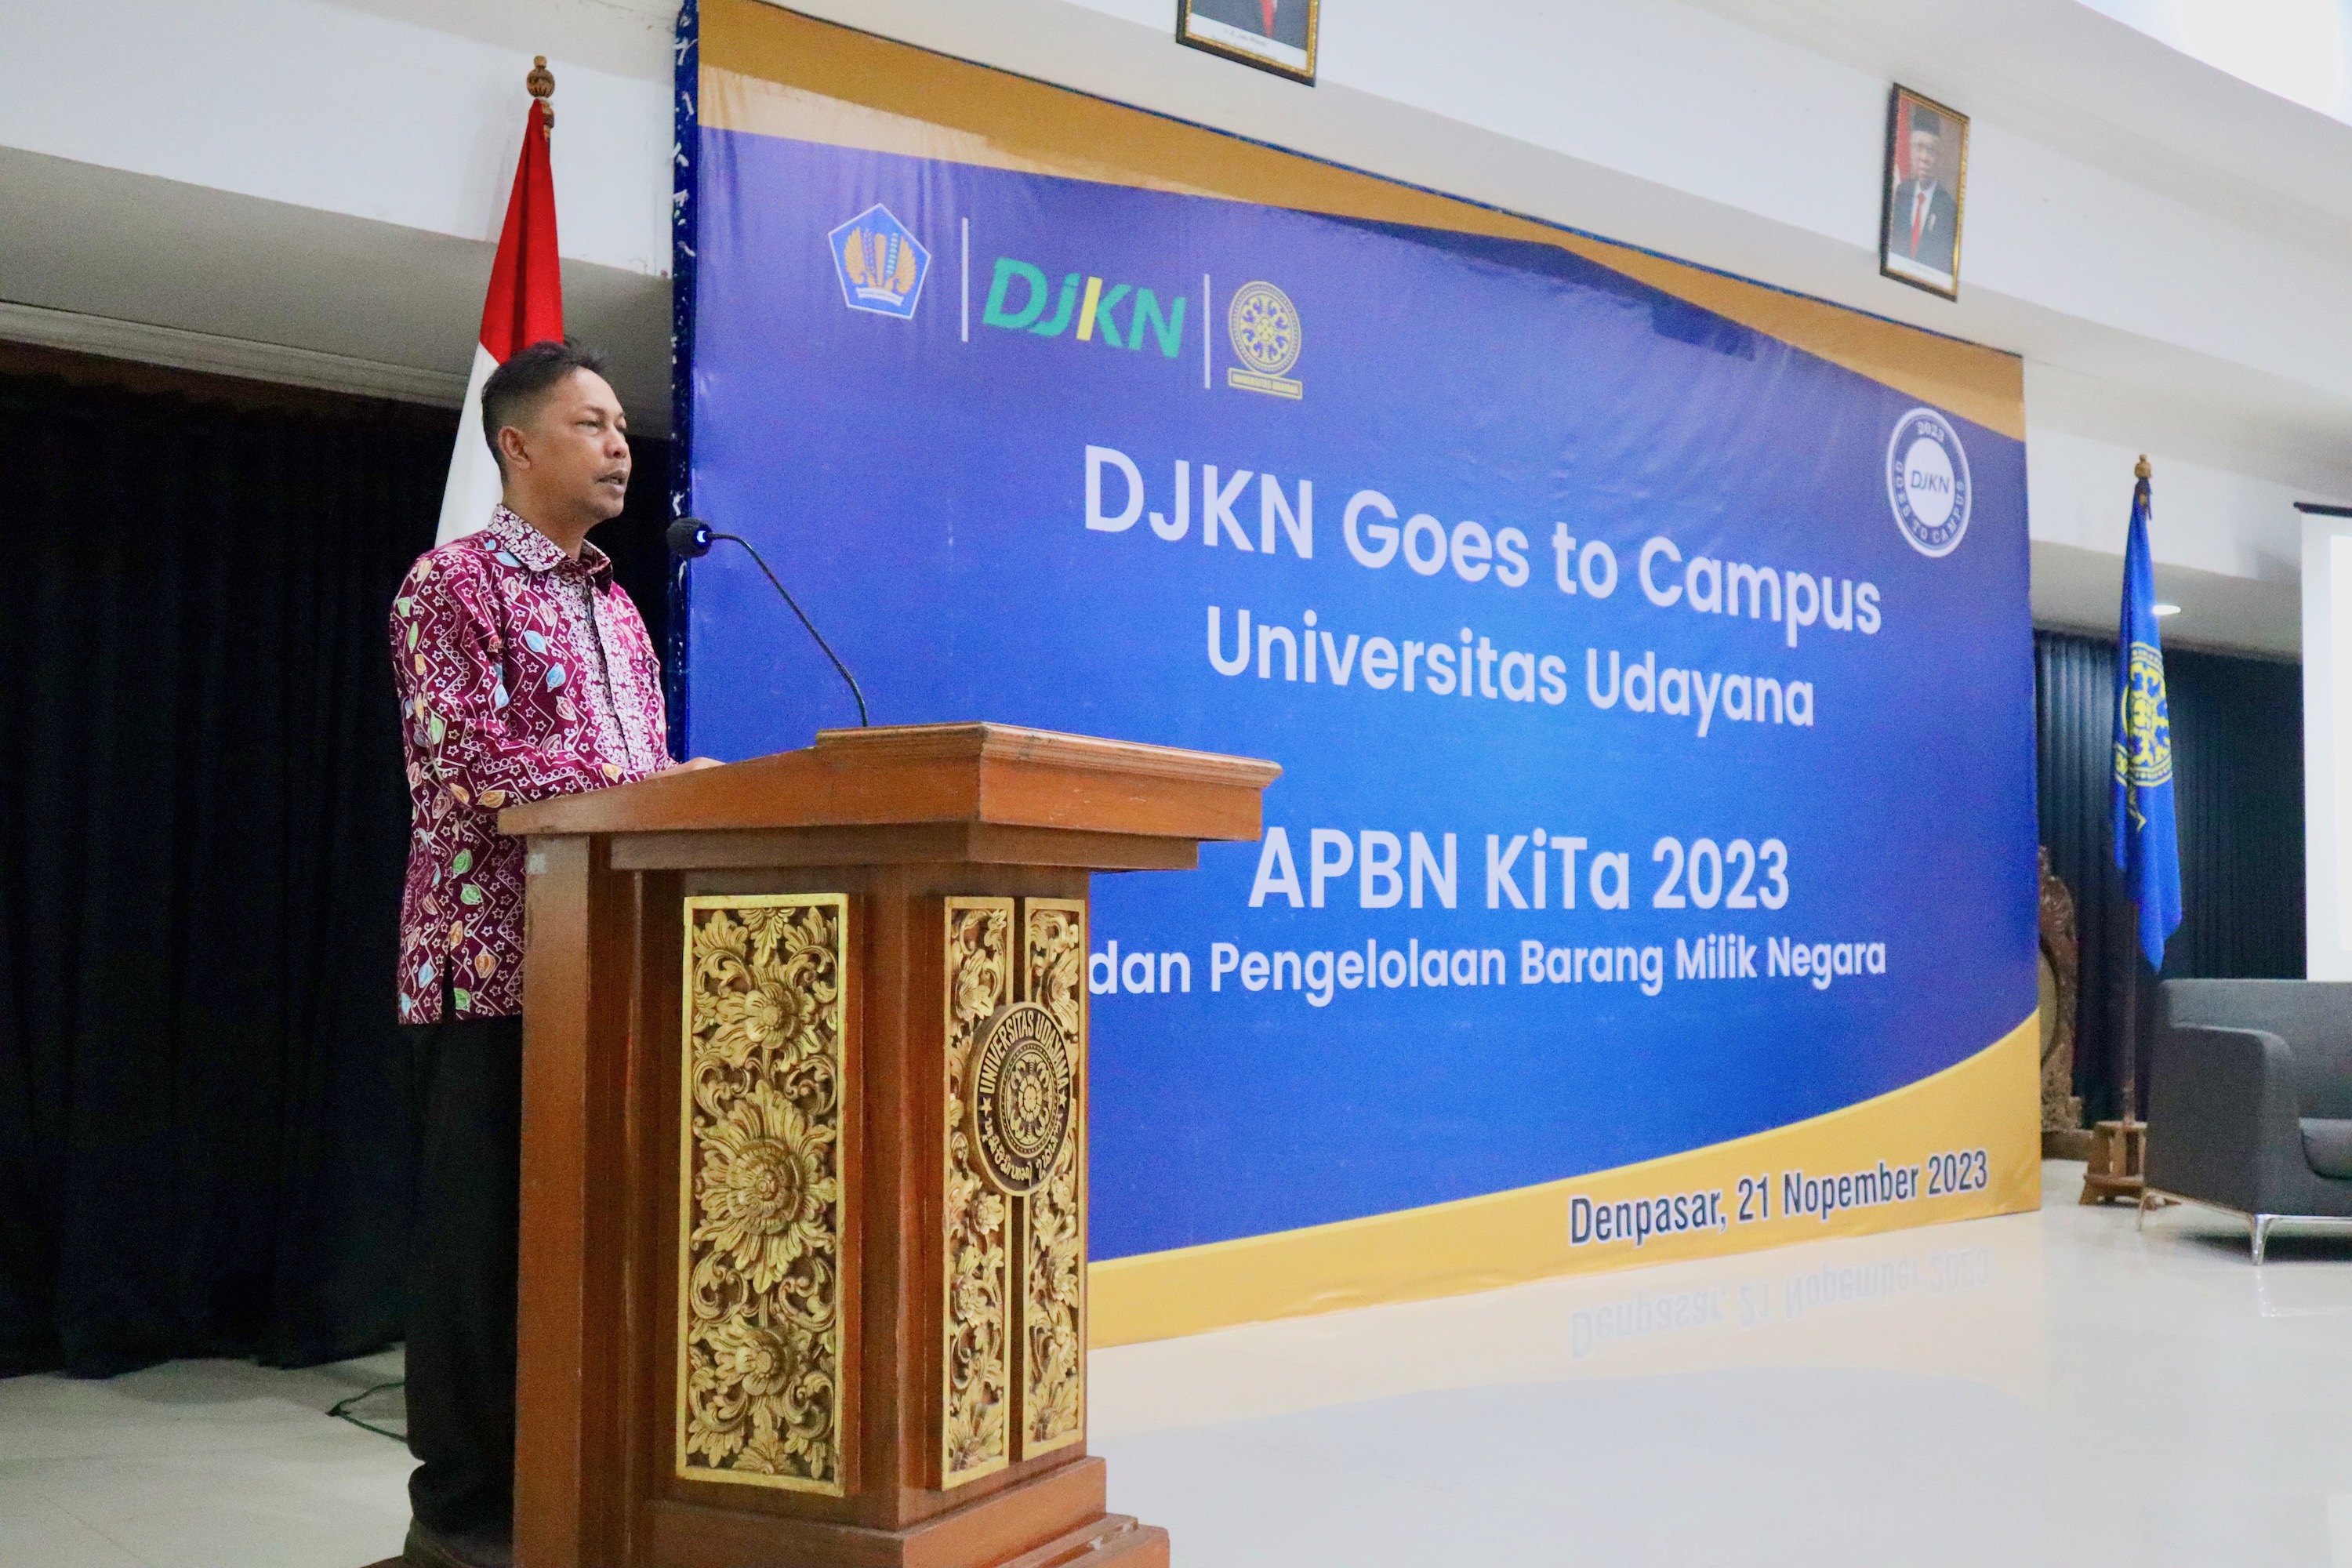 DJKN Goes to Campus: Mahasiswa Universitas Udayana Diperkenalkan pada APBN KiTA 2023 dan Pengelolaan Barang Milik Negara